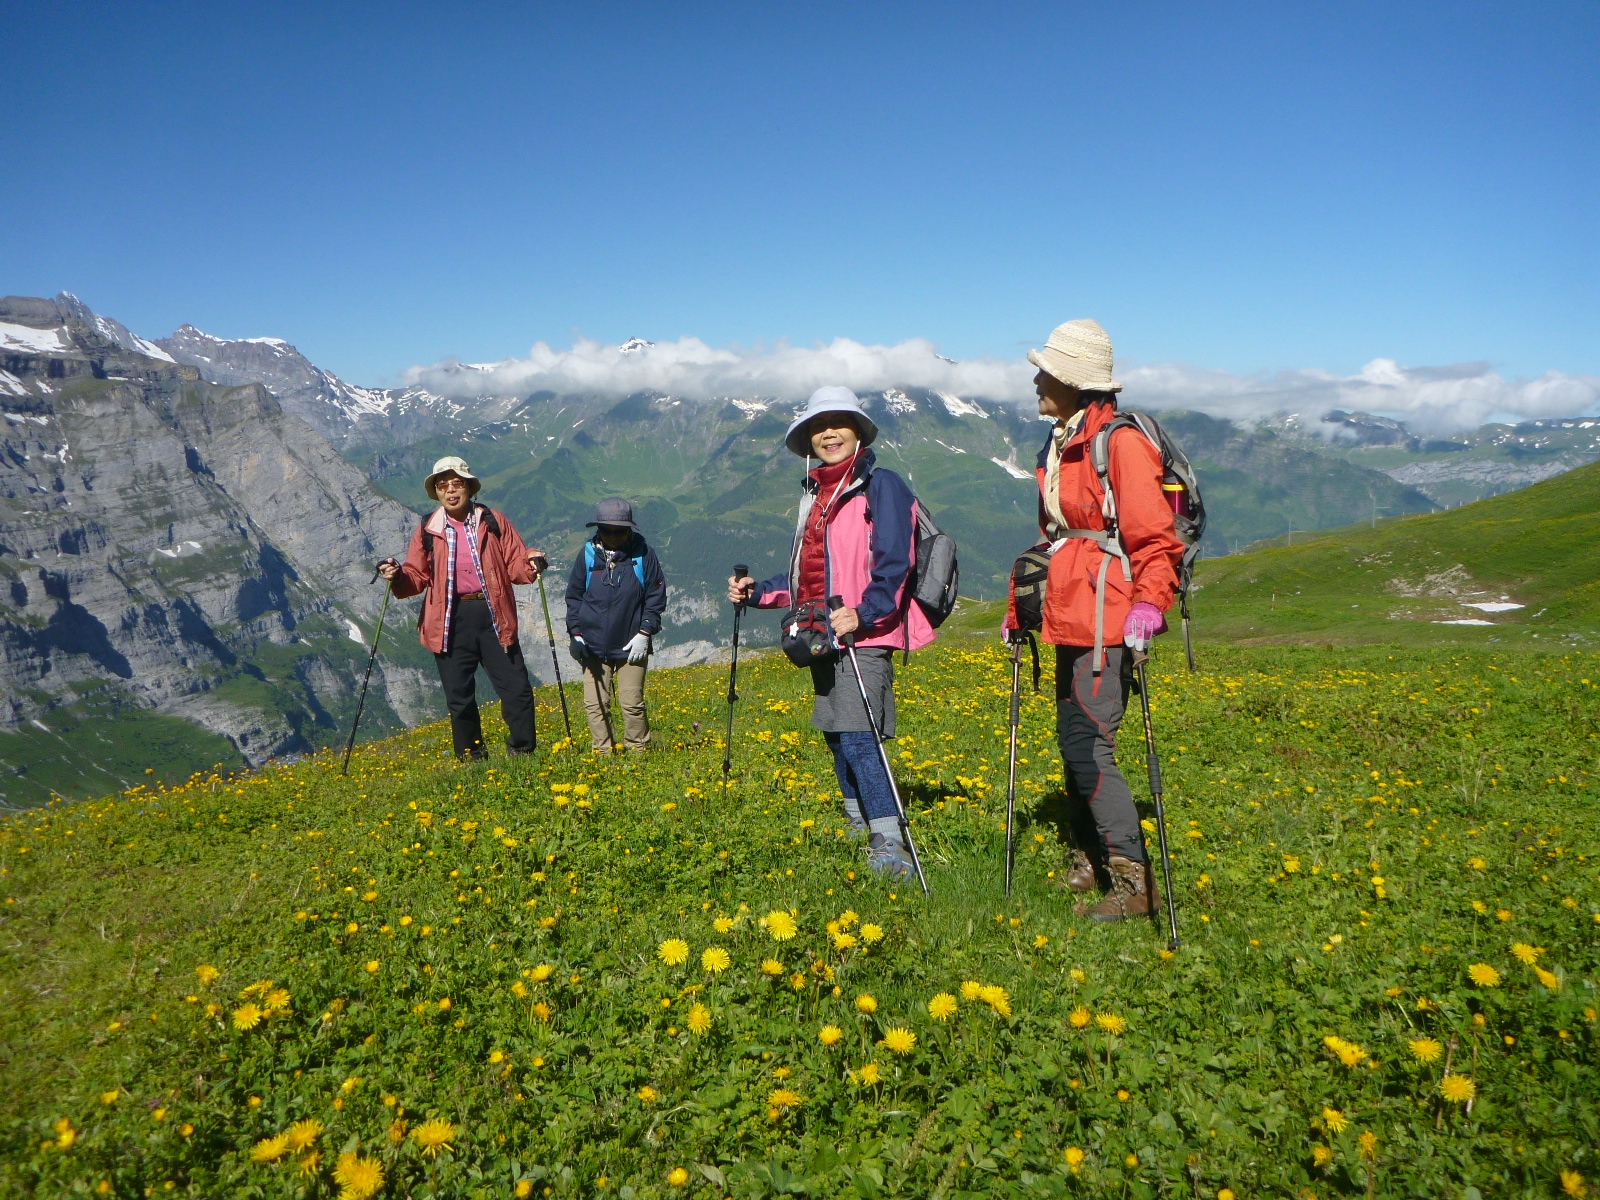 スイスアルプスと可憐な高山植物をゆったりと巡るトレッキング ヒマラヤトレッキング 登山ツアー専門 サパナ